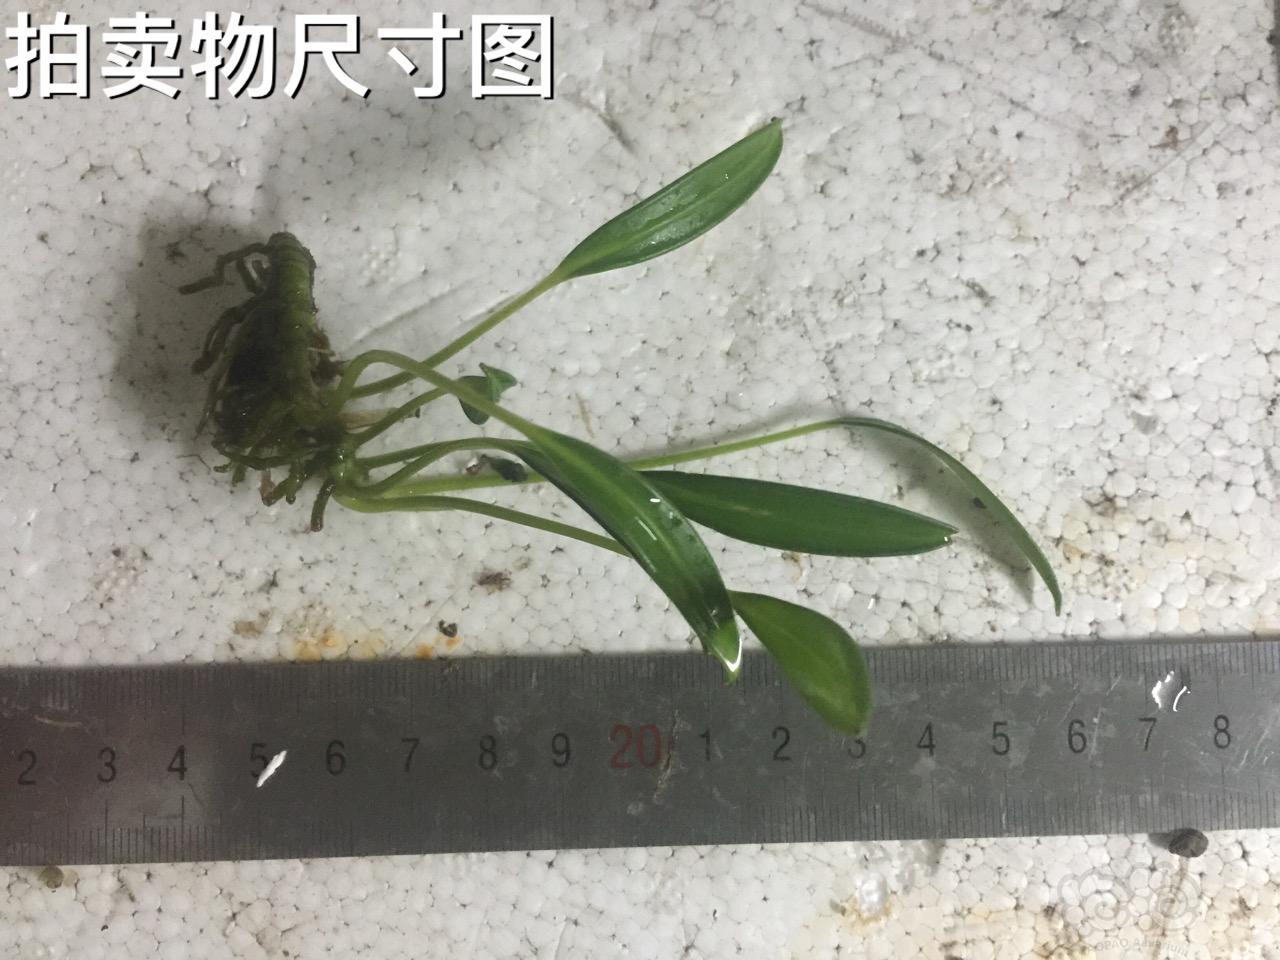 【用品】2016-07-15#RMB拍卖岩榕一颗-图1